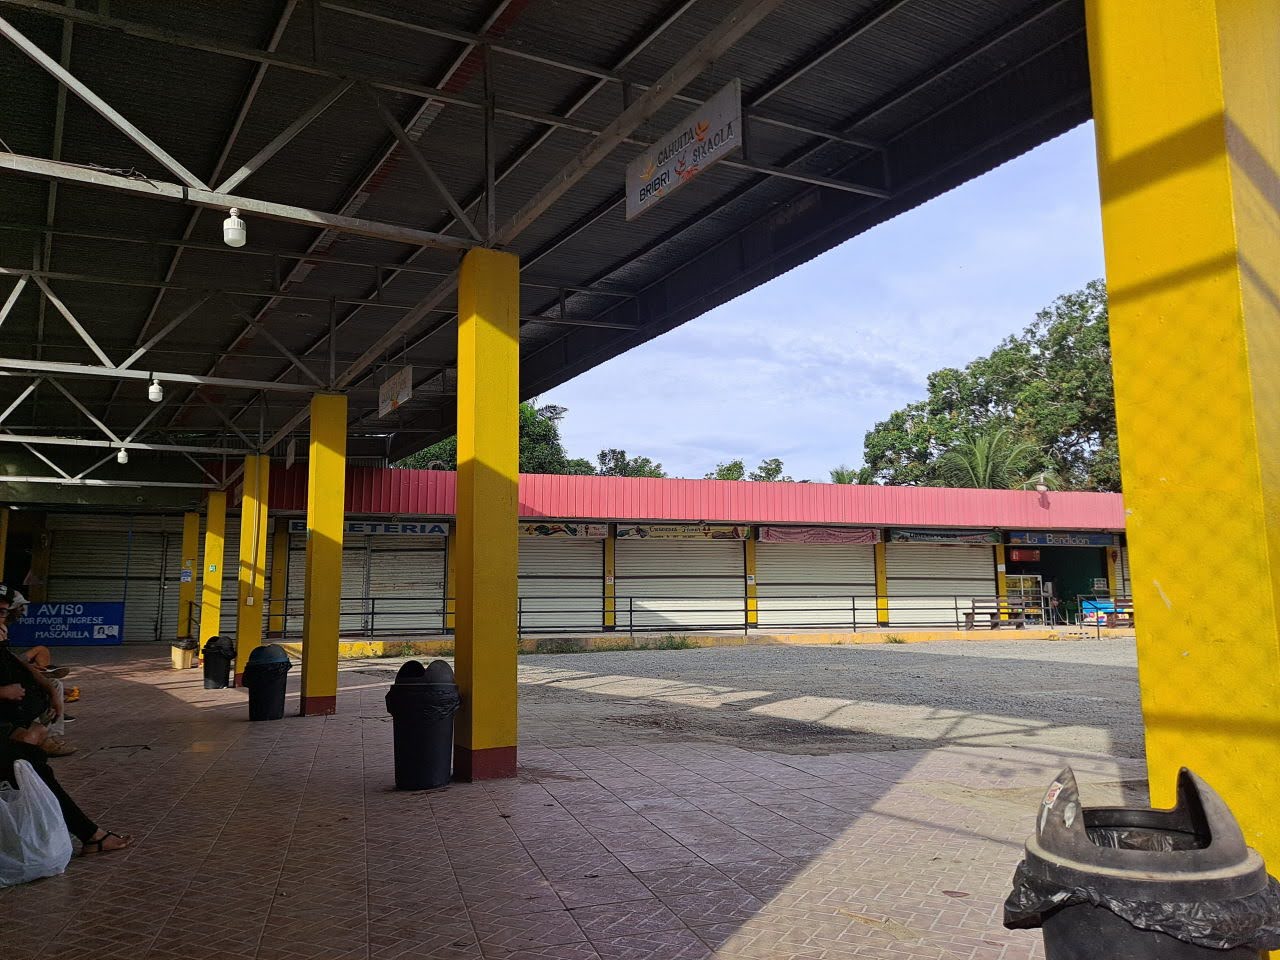 Cahuita bus station